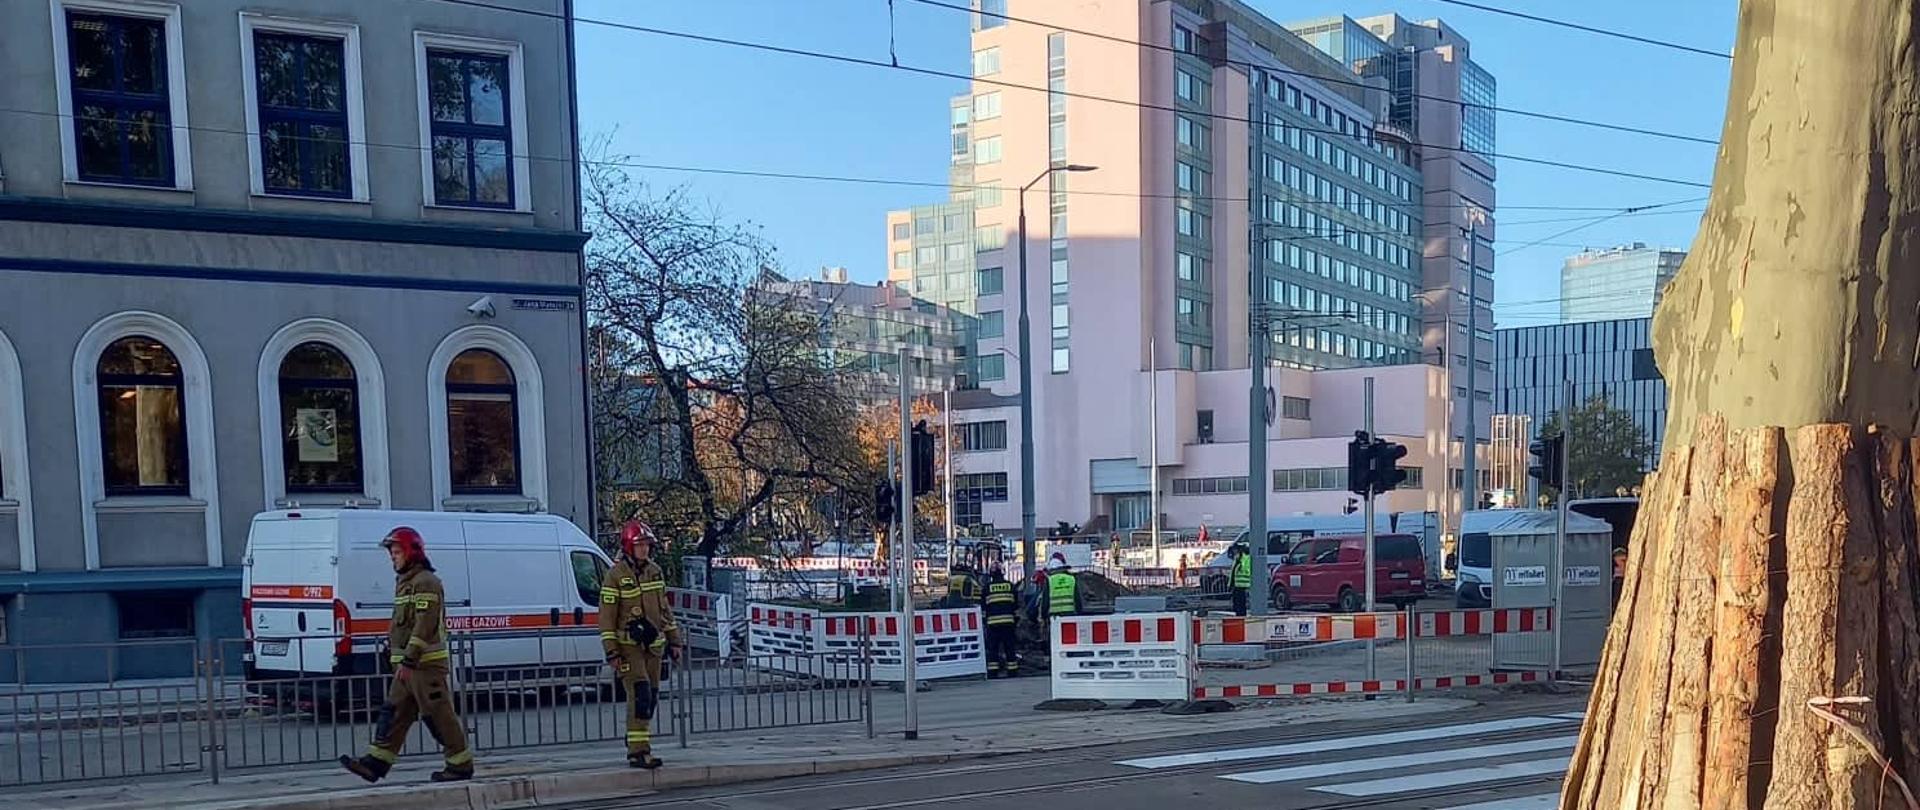 Widok na skrzyżowanie ulicy Jana Matejki i Marszałka Józefa Piłsudskiego. Na zdjęciu widoczni strażacy oraz pracownicy pogotowia gazowego.